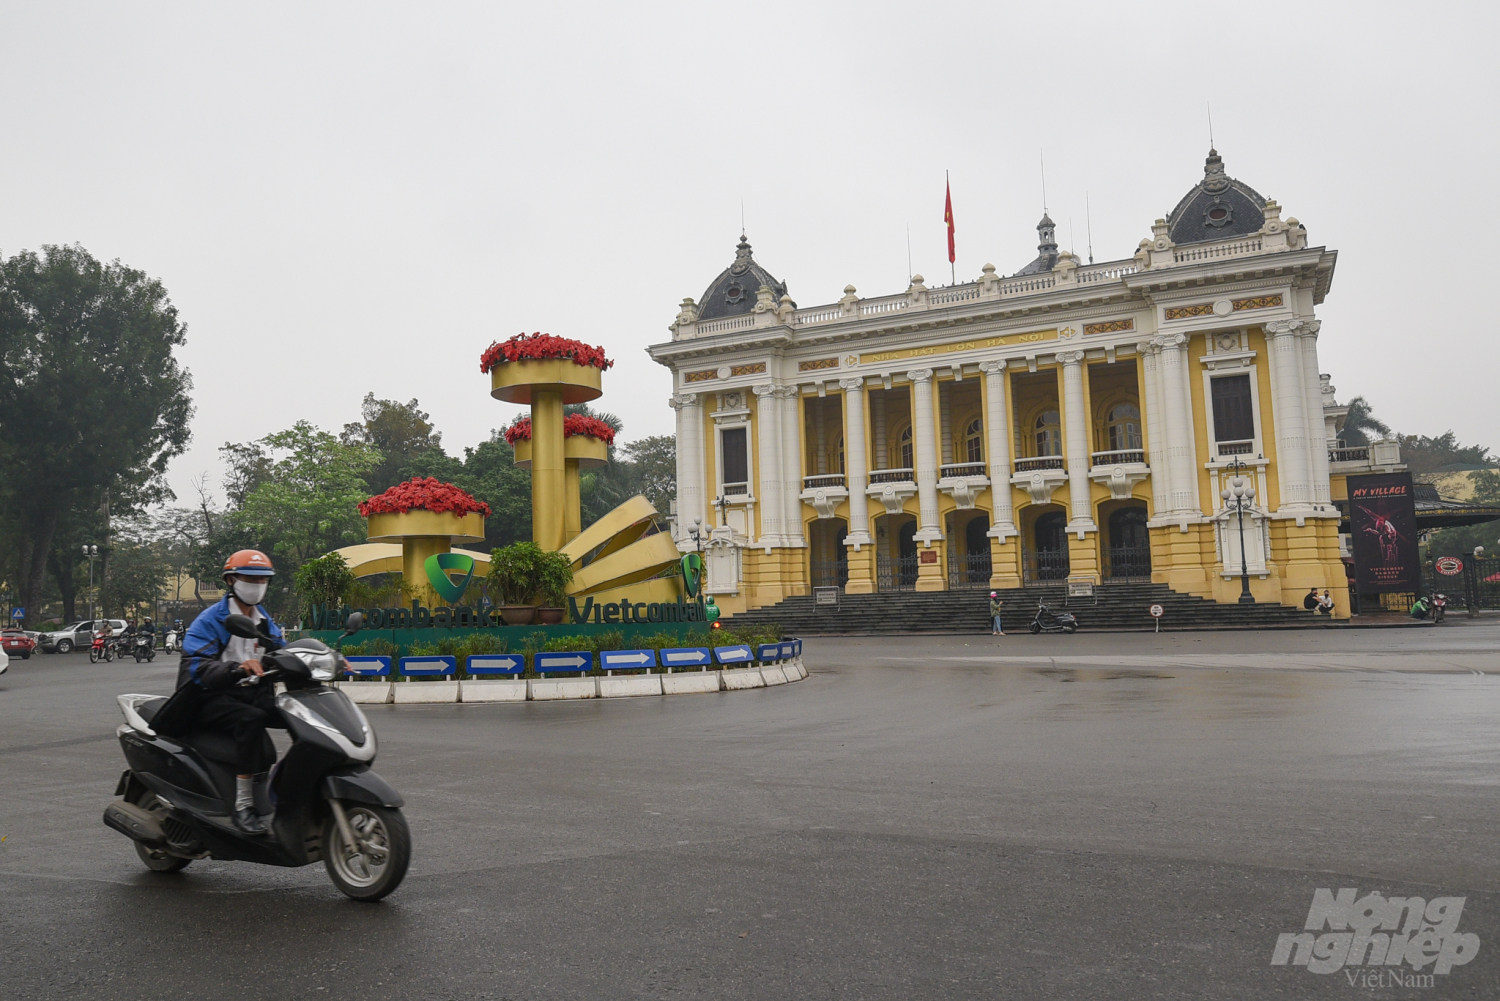 Tại Hà Nội, ở các địa điểm nổi tiếng, mặc dù lượng người tham quan không đông đúc nhưng đa số đều đeo khẩu trang trong bối cảnh dịch Covid-19 đang có nhiều diễn biến phức tạp. Ảnh: Tùng Đinh.